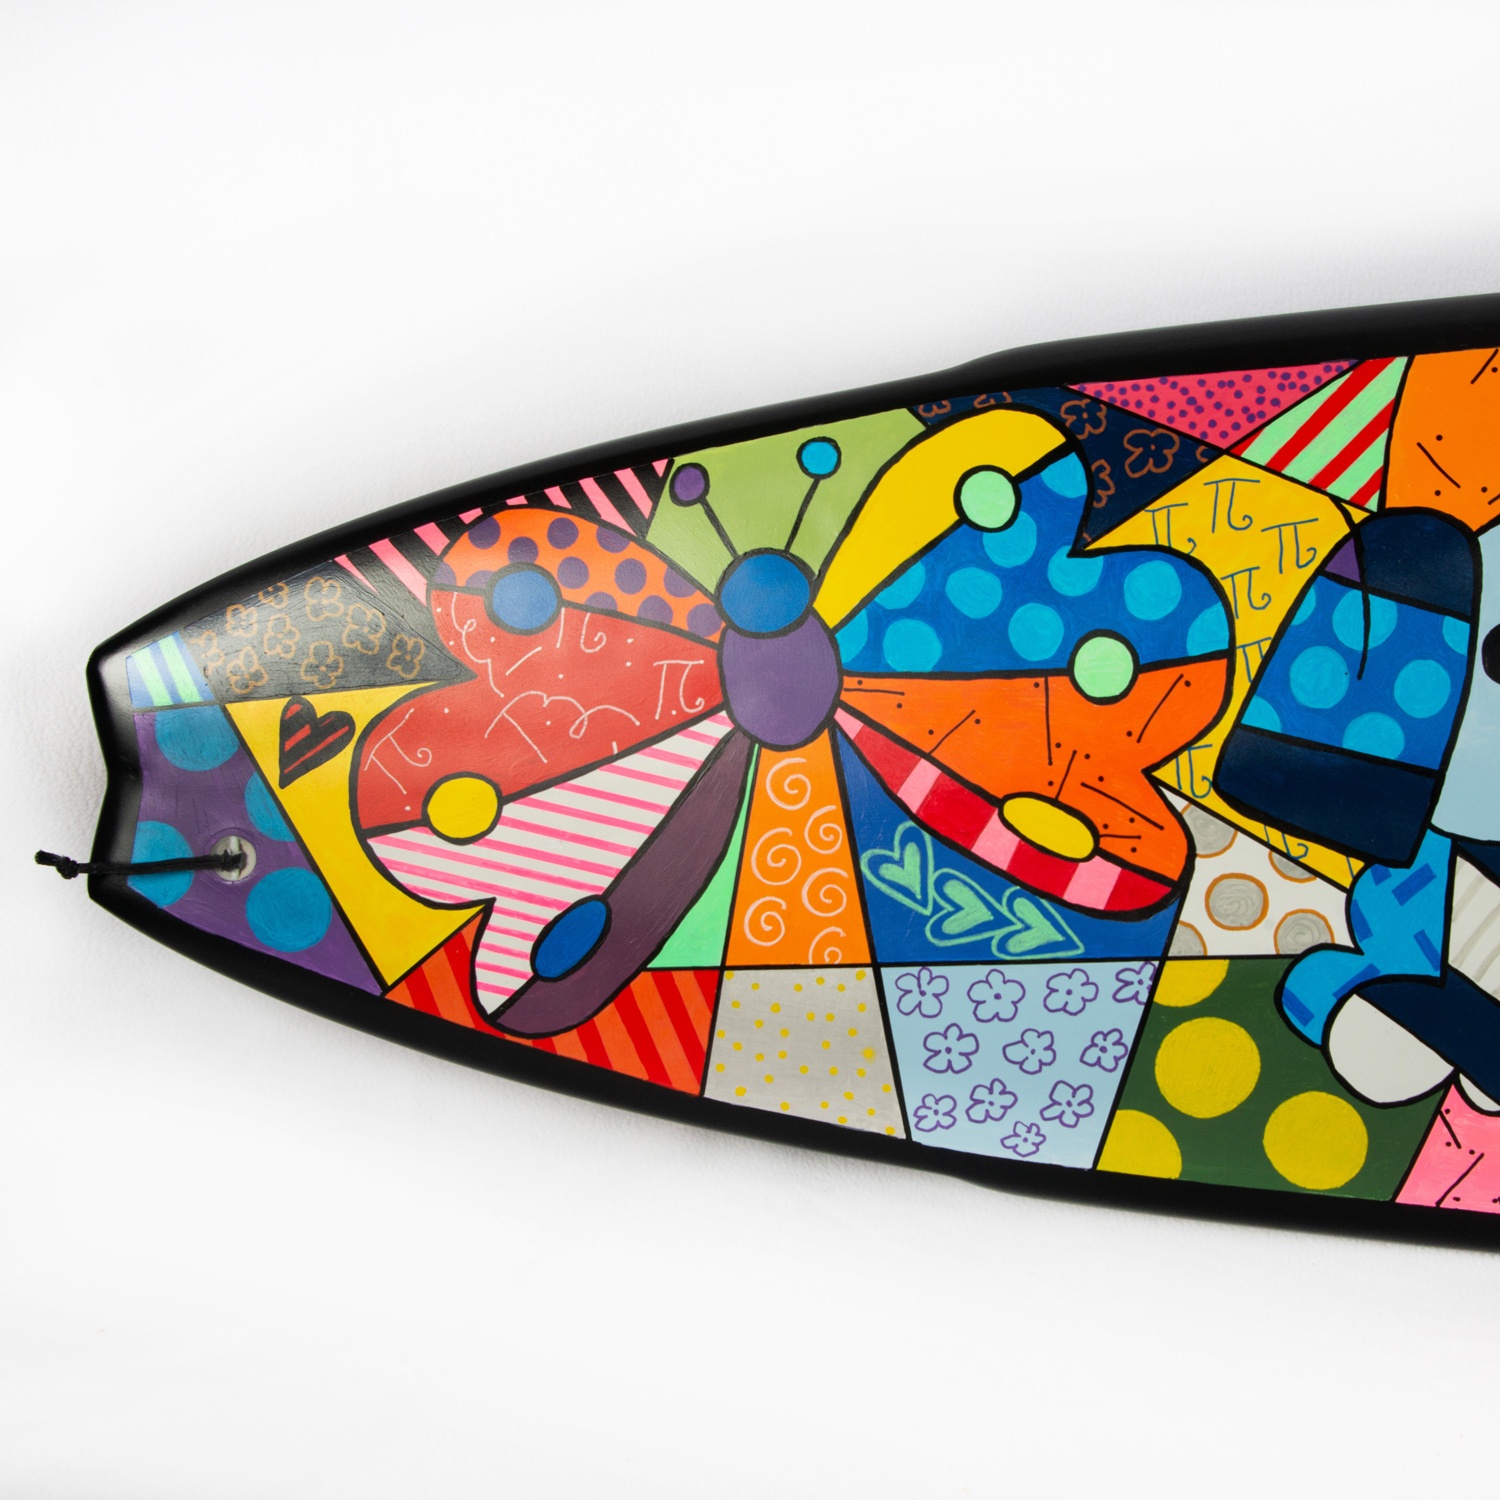 surfboard-1-claire-p-cohen-brito